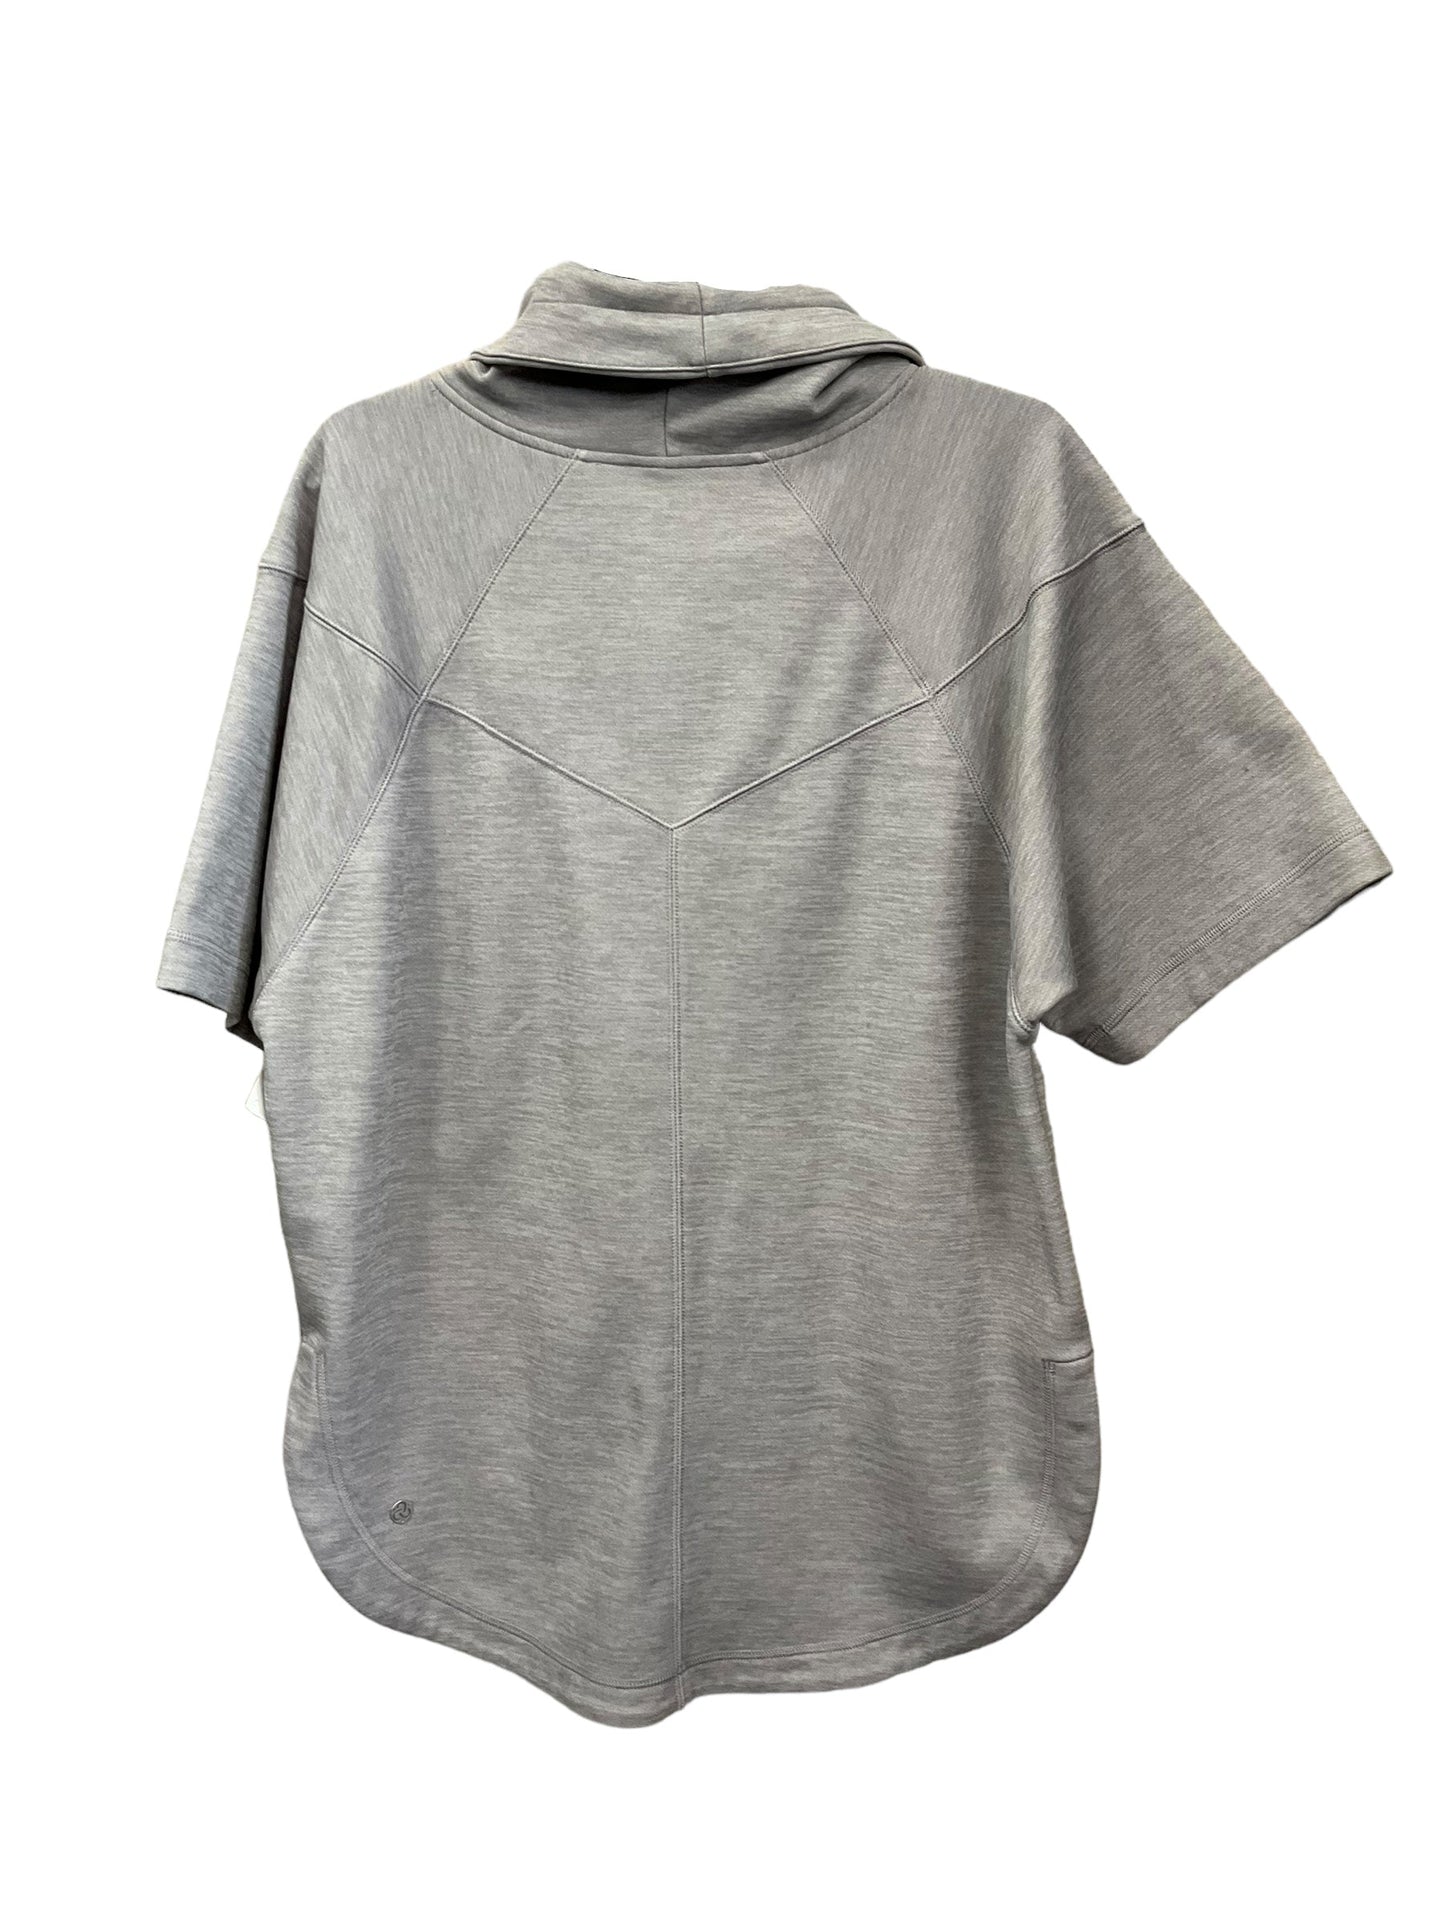 Grey Athletic Sweatshirt Hoodie Zella, Size Xs